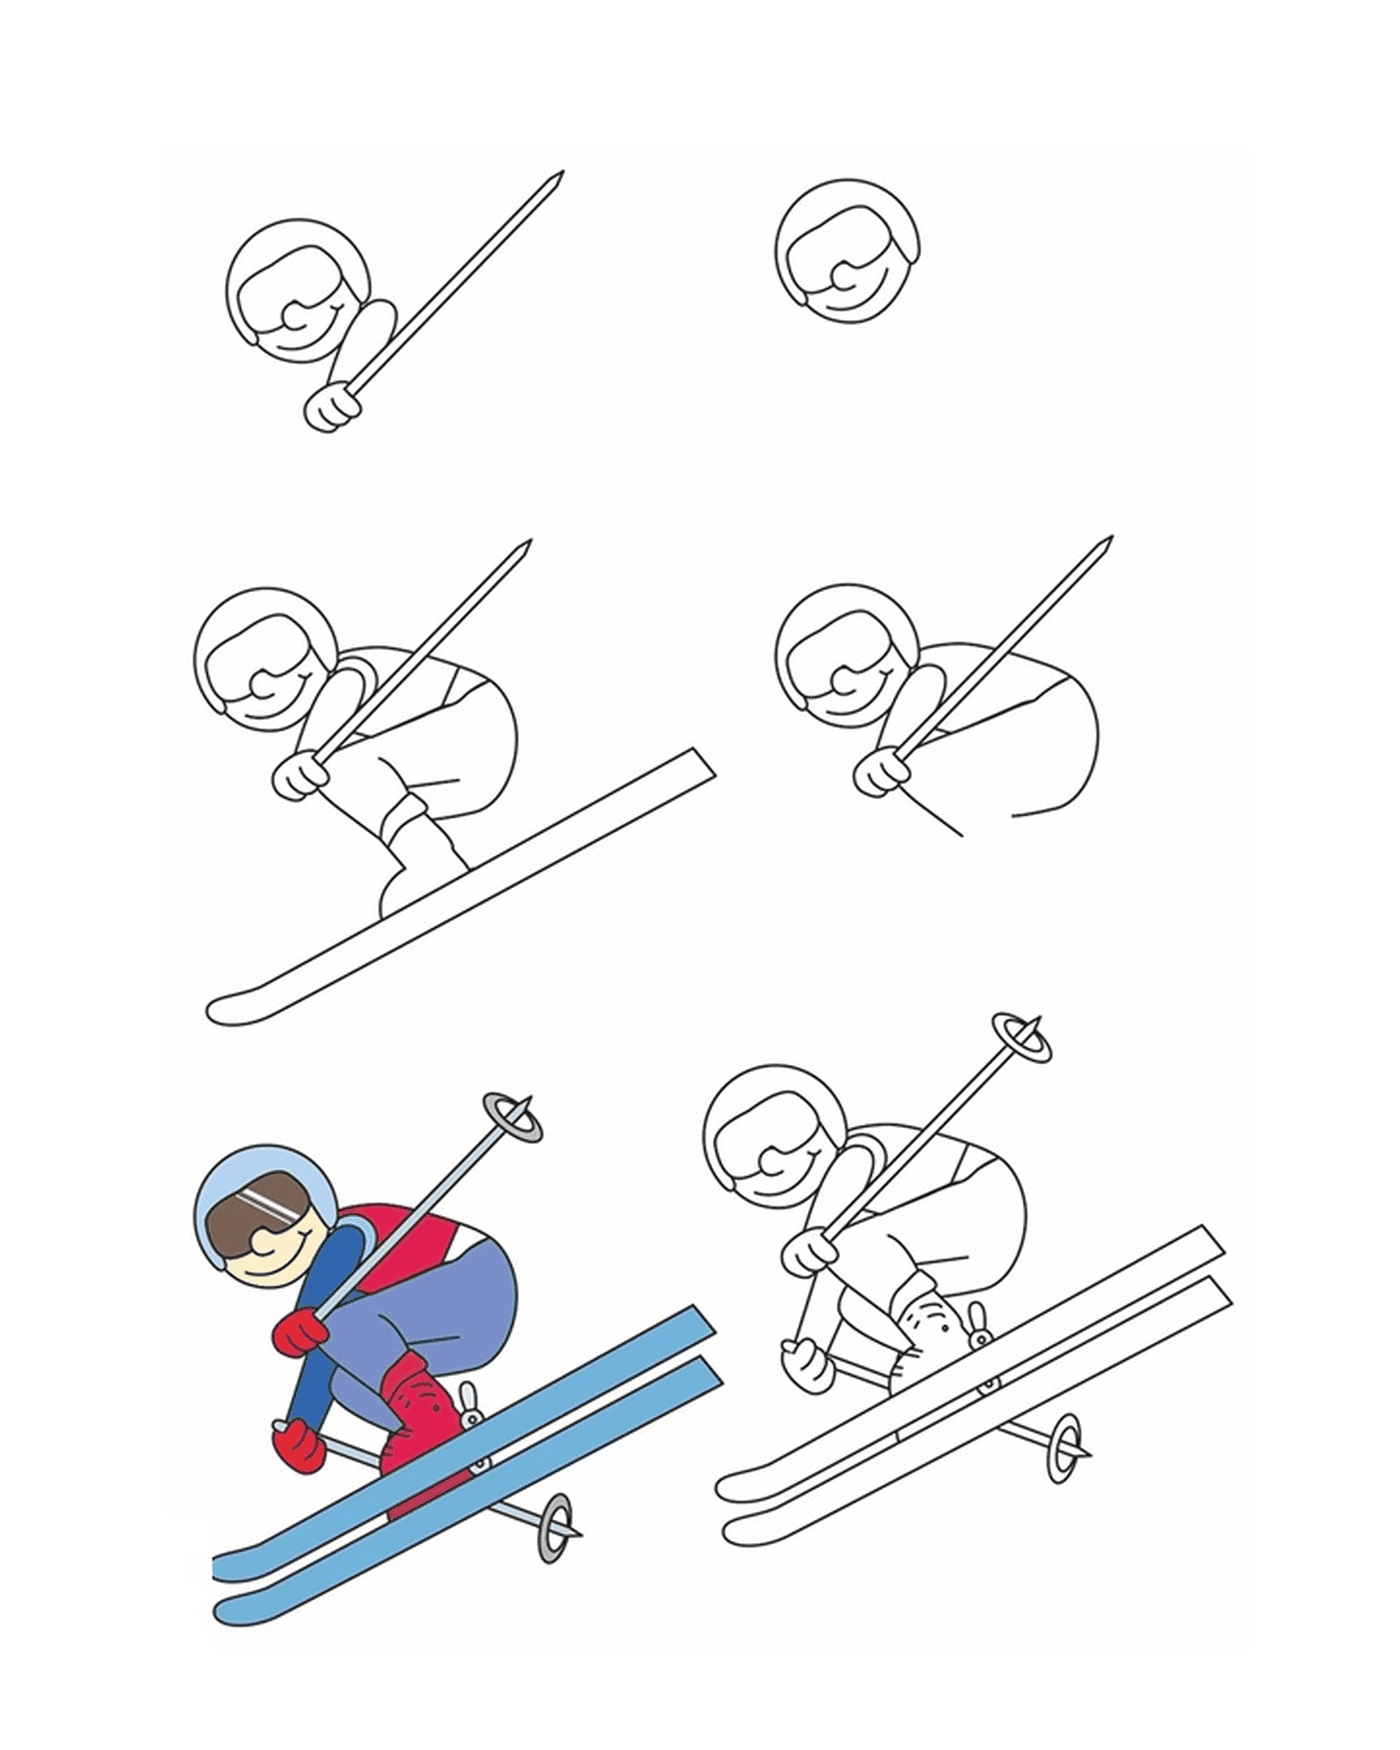  Como desenhar esqui acrobático 